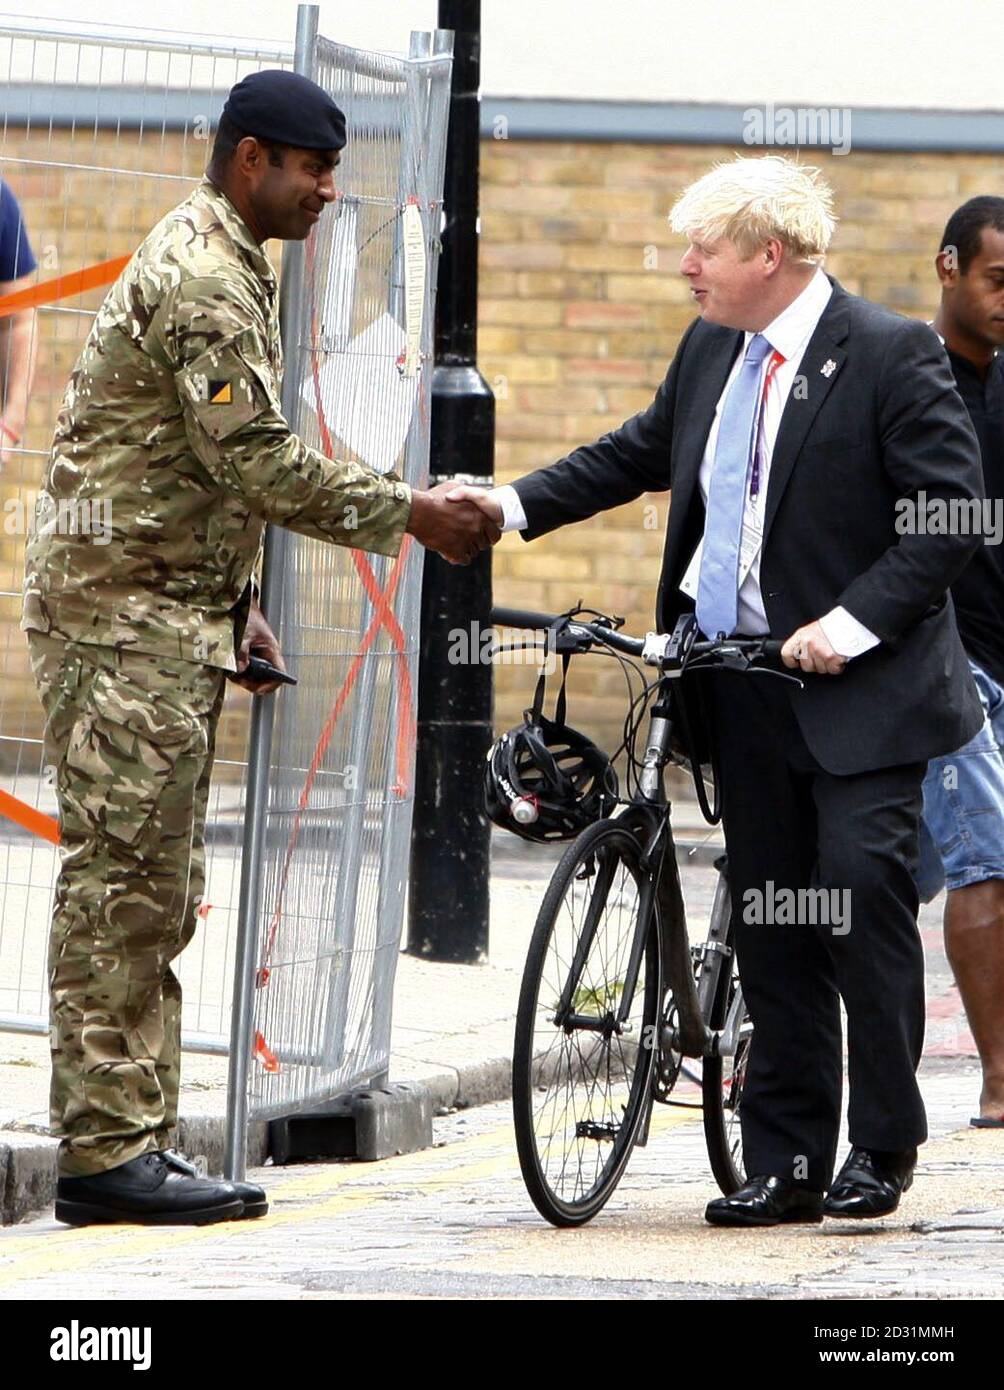 Le maire de Londres, Boris Johnson, parle aux membres des forces armées lors d'une visite à Tobacco Dock, Wapping, pour vous remercier de leur aide pour la sécurité des Jeux Olympiques de Londres 2012. Banque D'Images